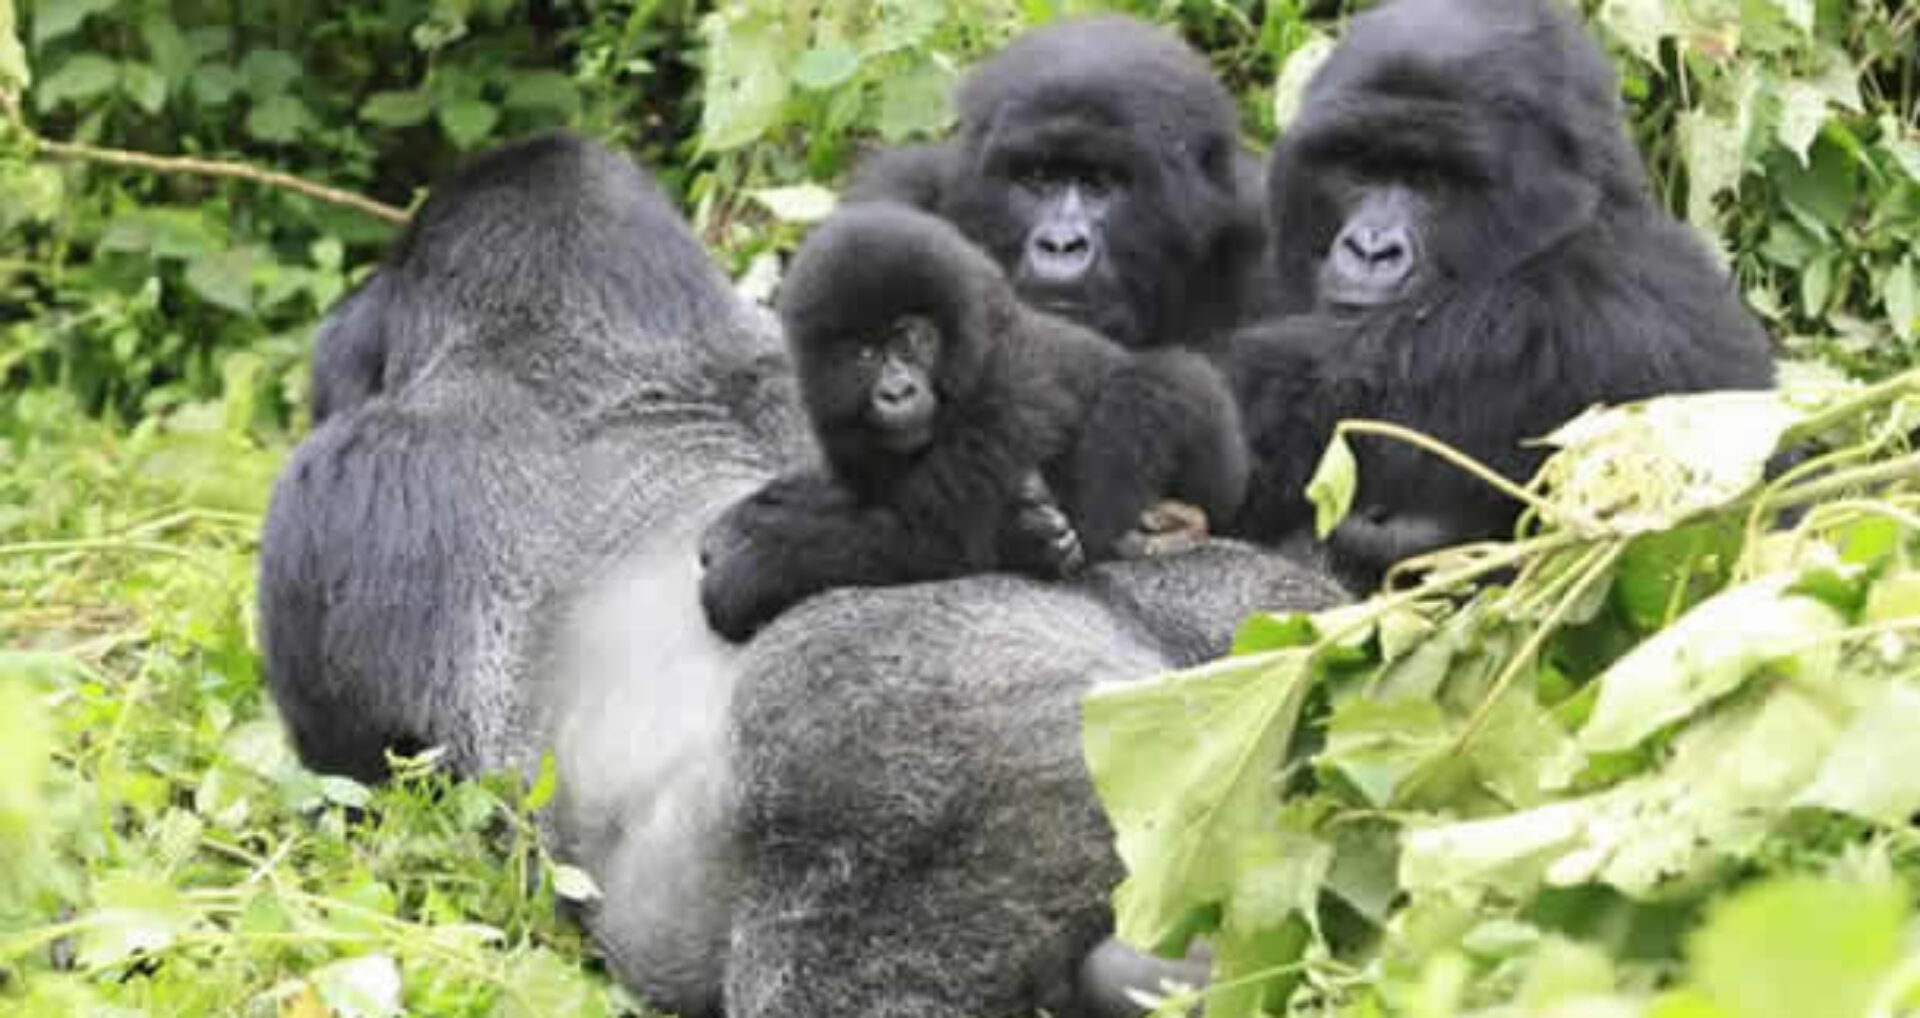 Nkuringo gorillas